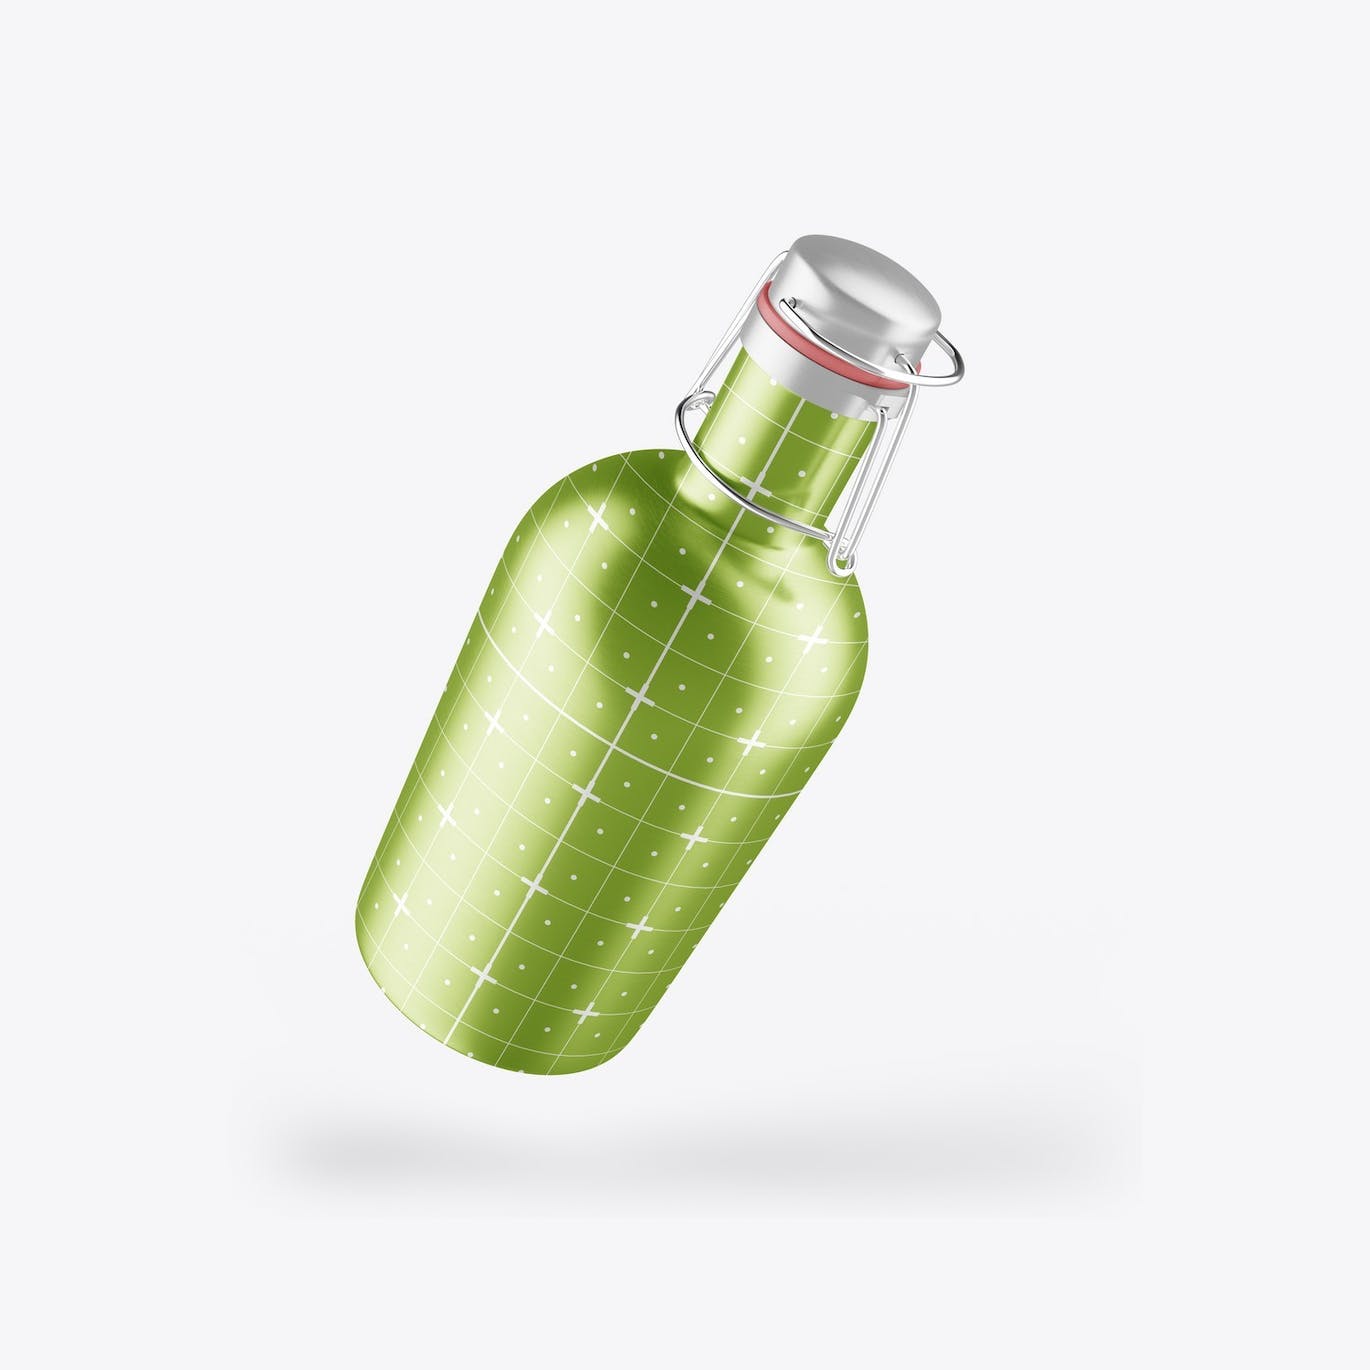 金属热水瓶包装设计样机 Thermo Bottle Mockup 样机素材 第10张